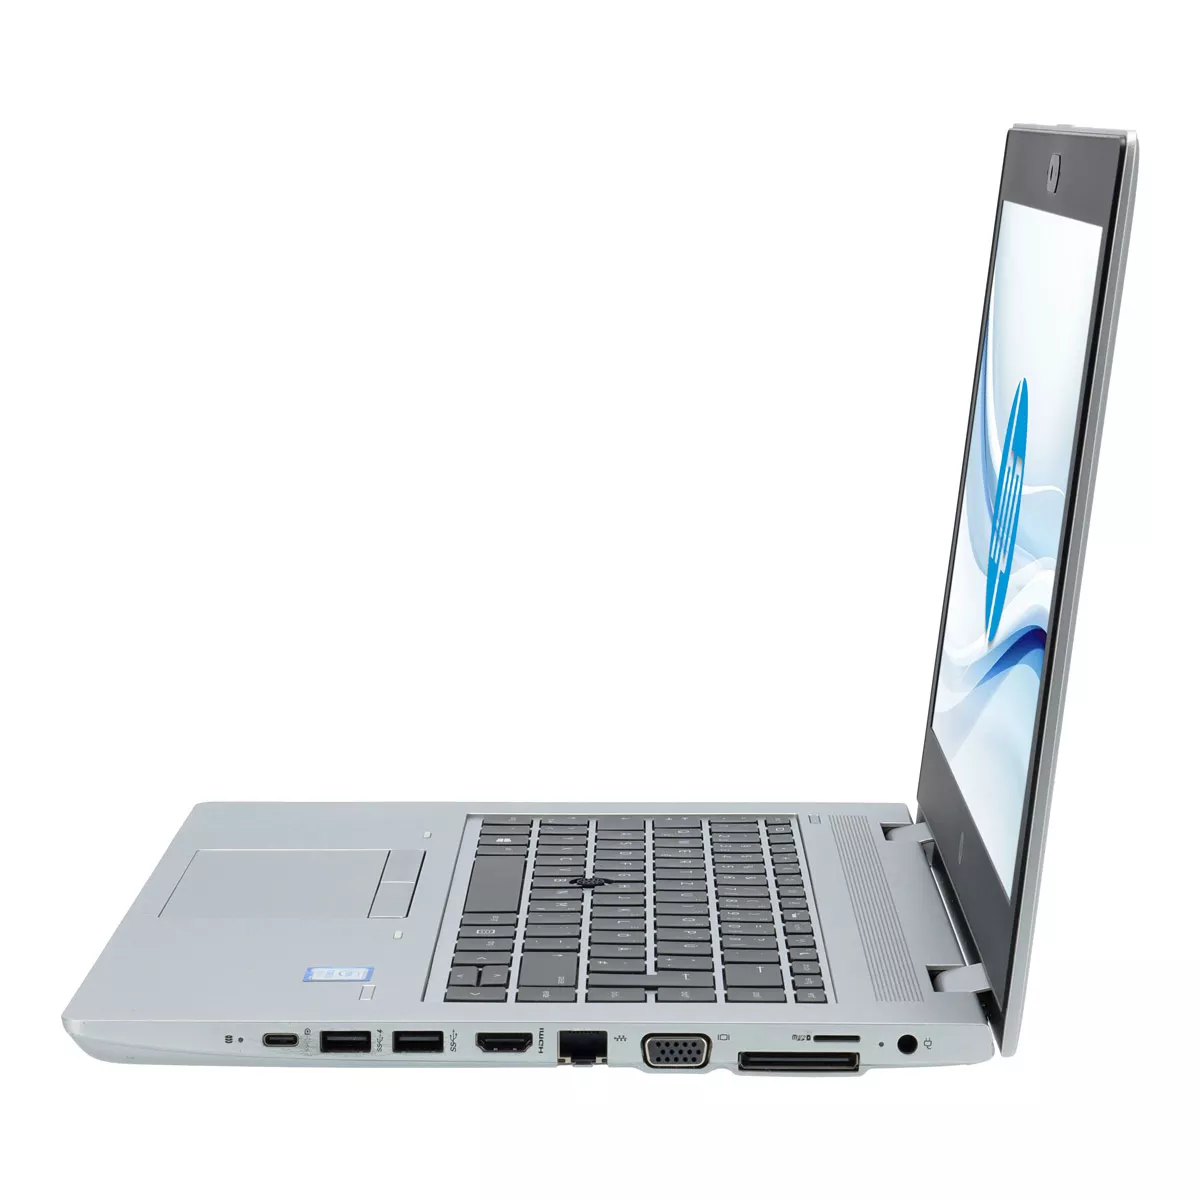 HP ProBook 640 G5 Core i7 8665U Full-HD 8 GB 240 GB M.2 nVME SSD Webcam A